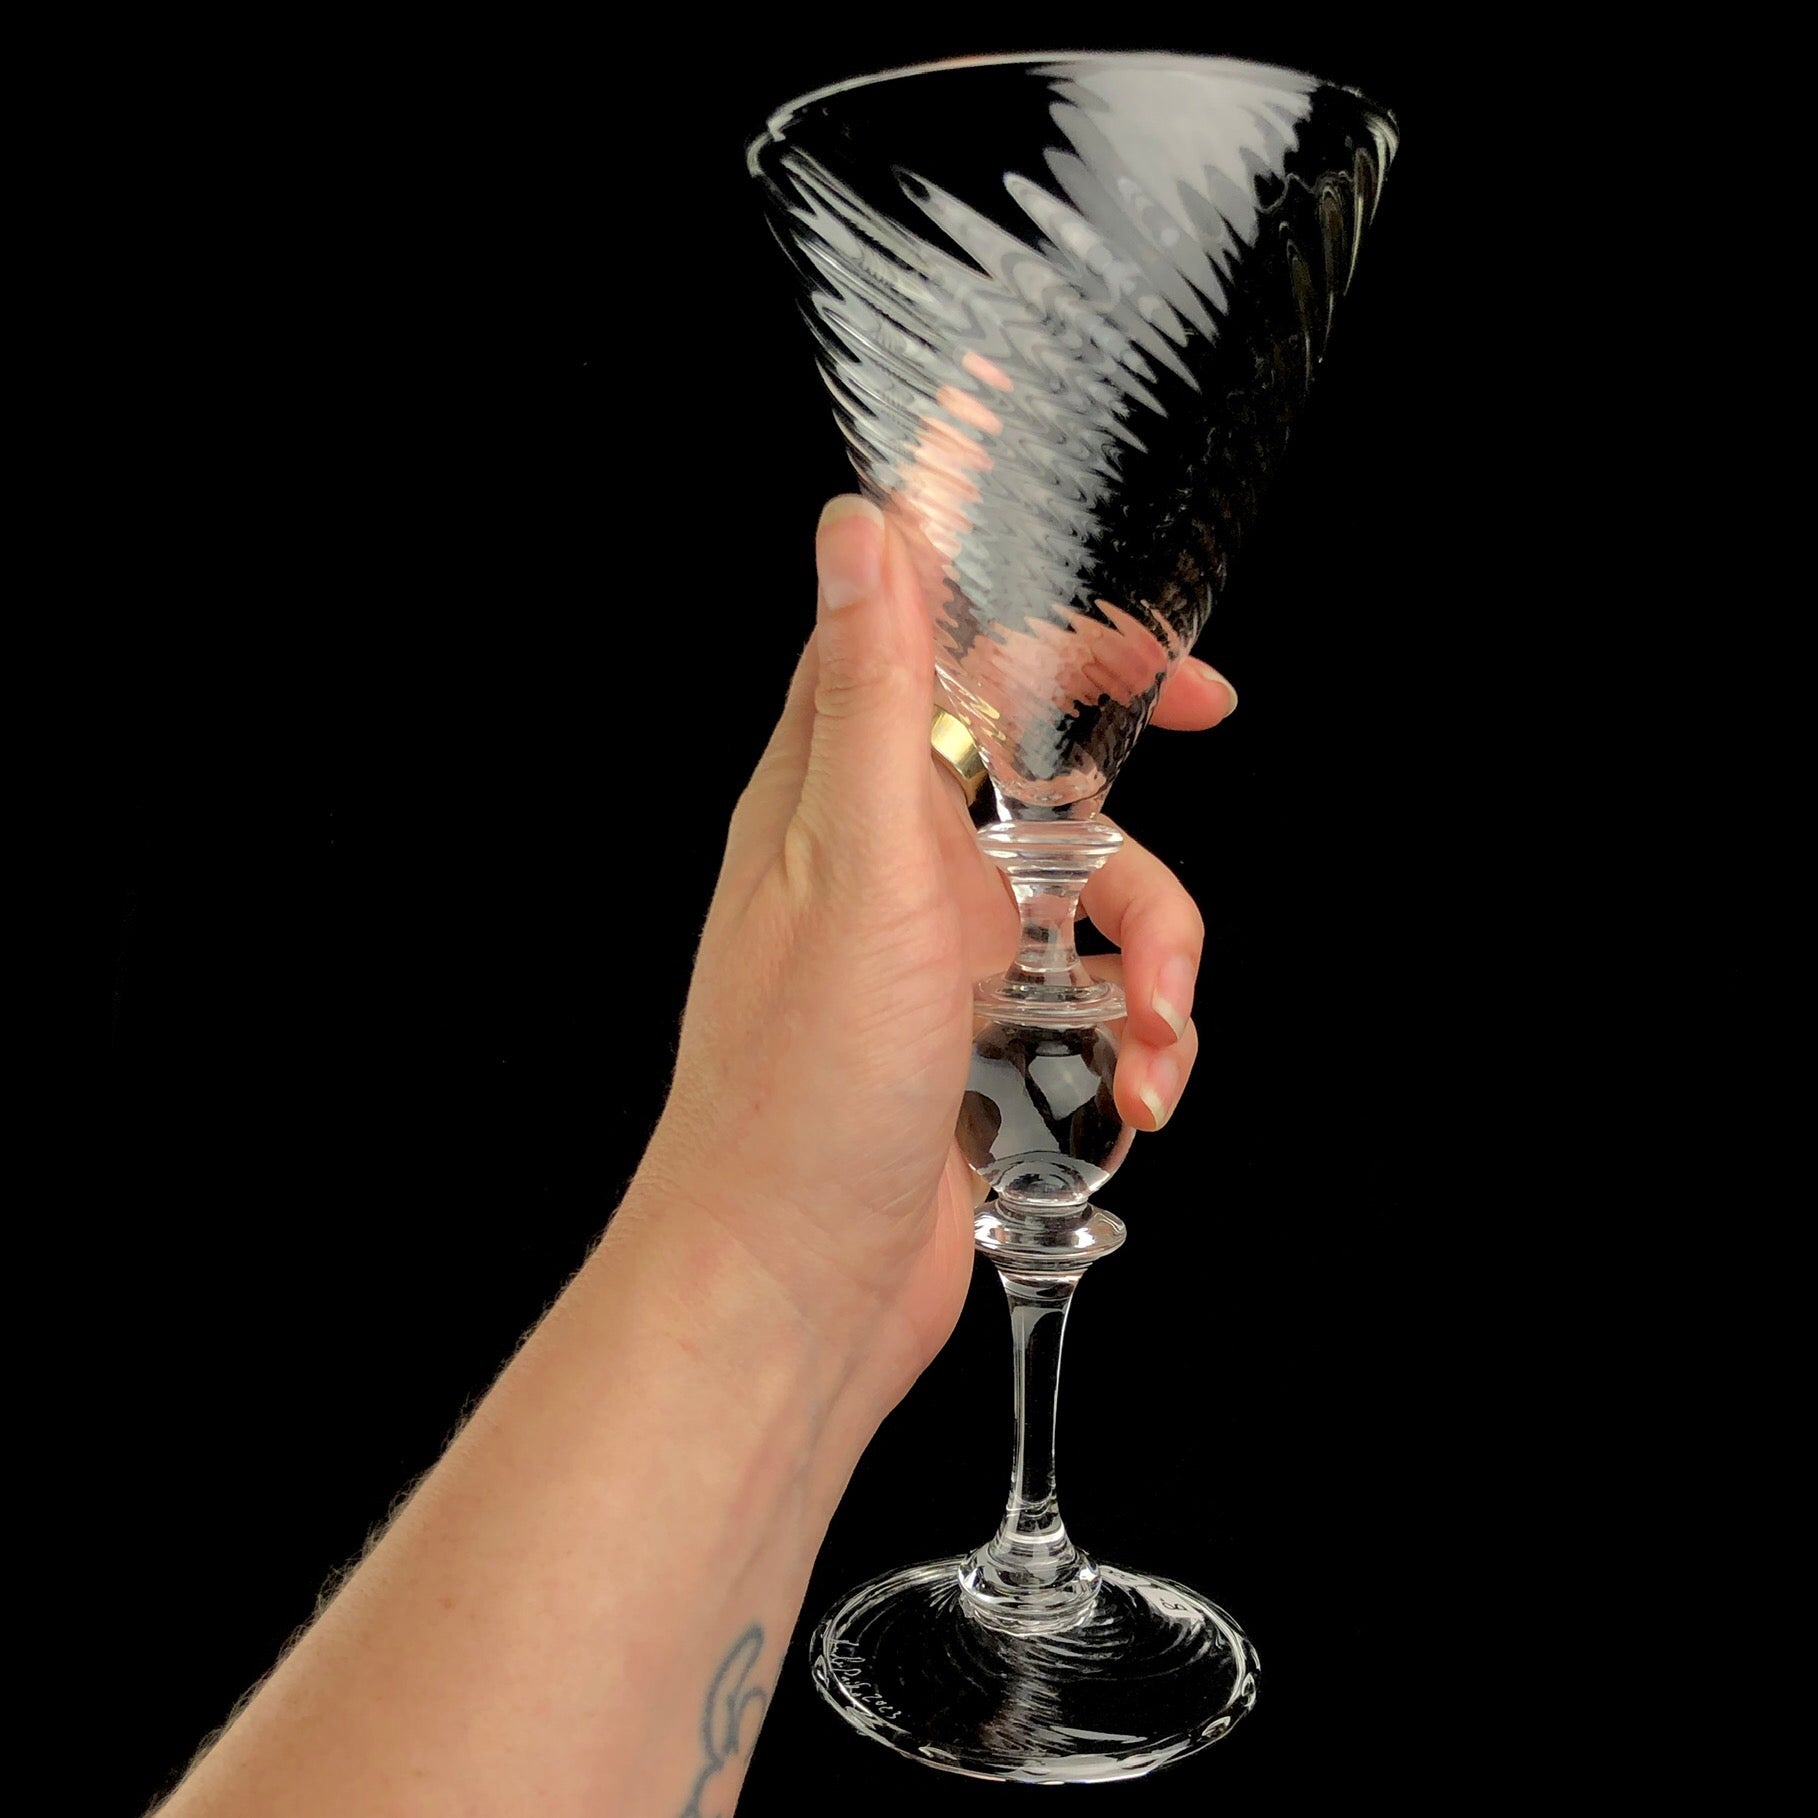 Martini Glass shown in hand